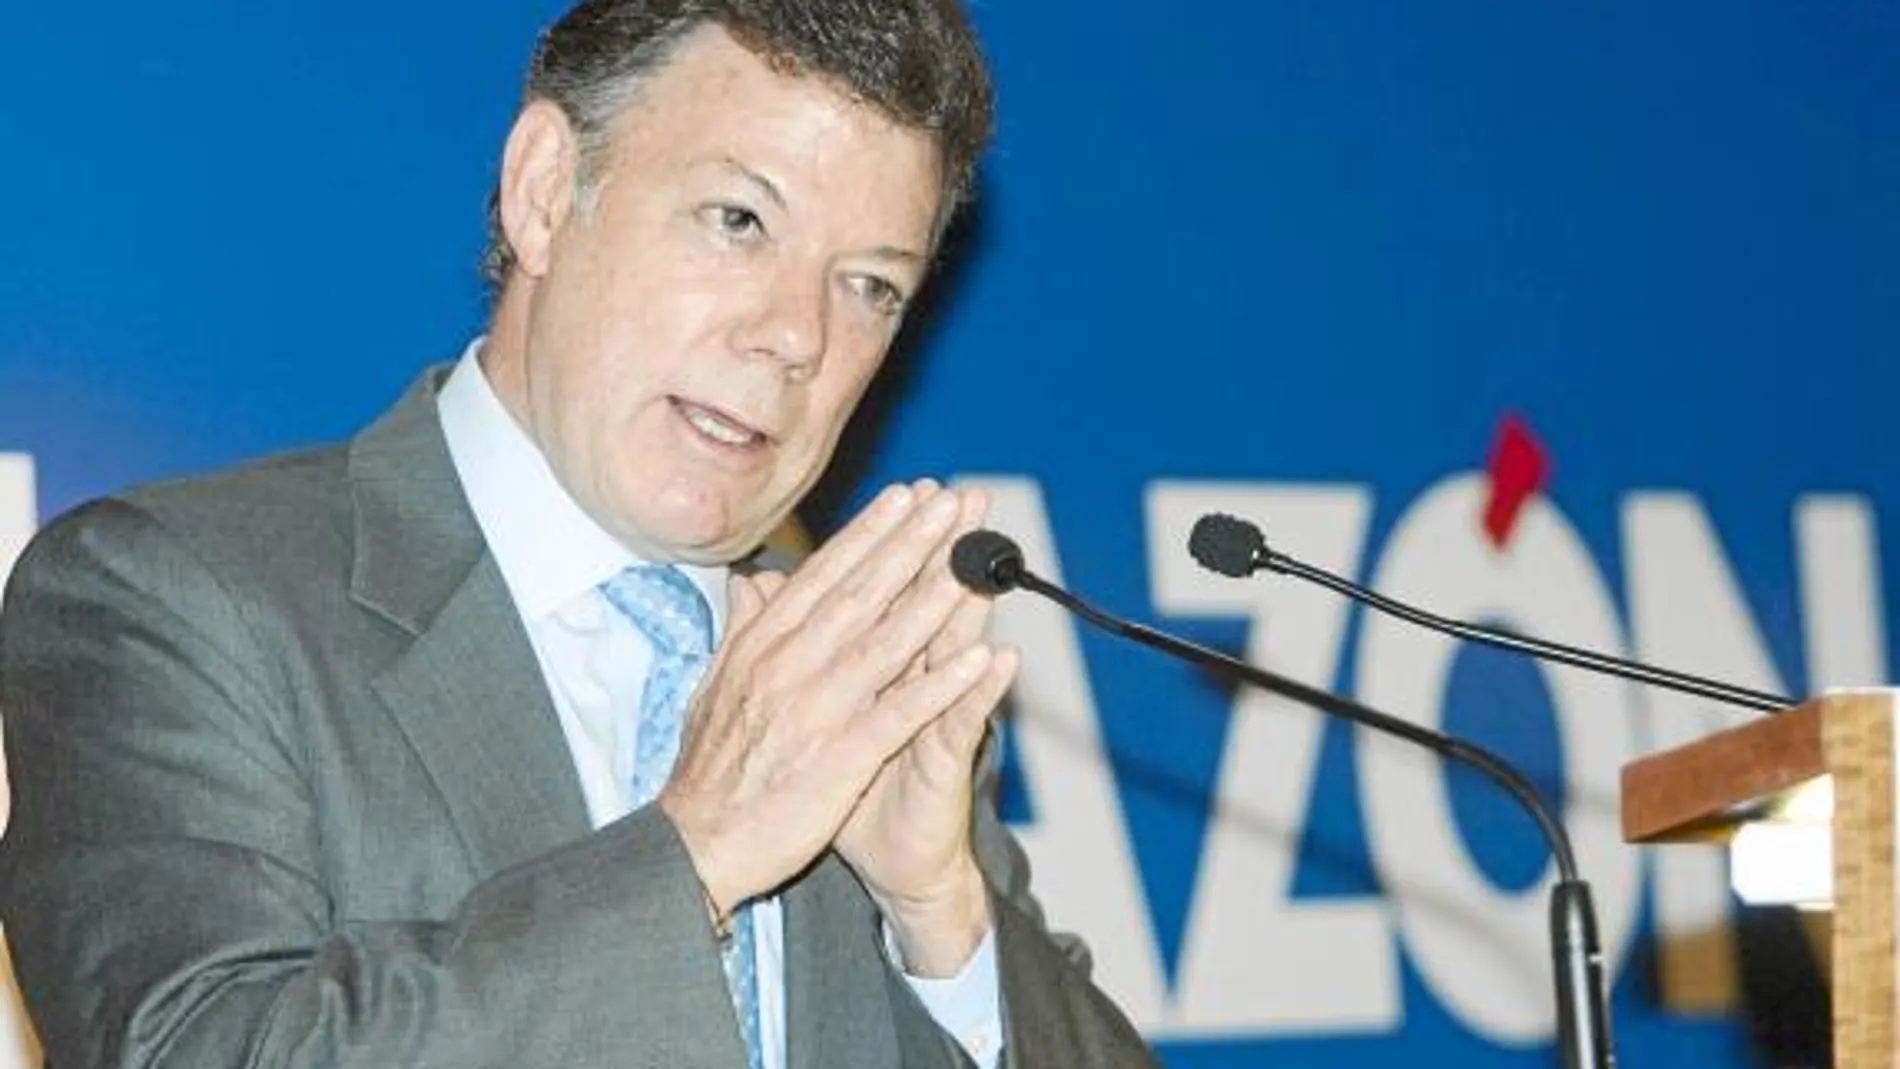 Santos, buen conocedor de España, durante su intervención en un encuentro organizado por LA RAZÓN y el Círculo Ecuestre de Barcelona, en 2009, donde expuso sus principios políticos